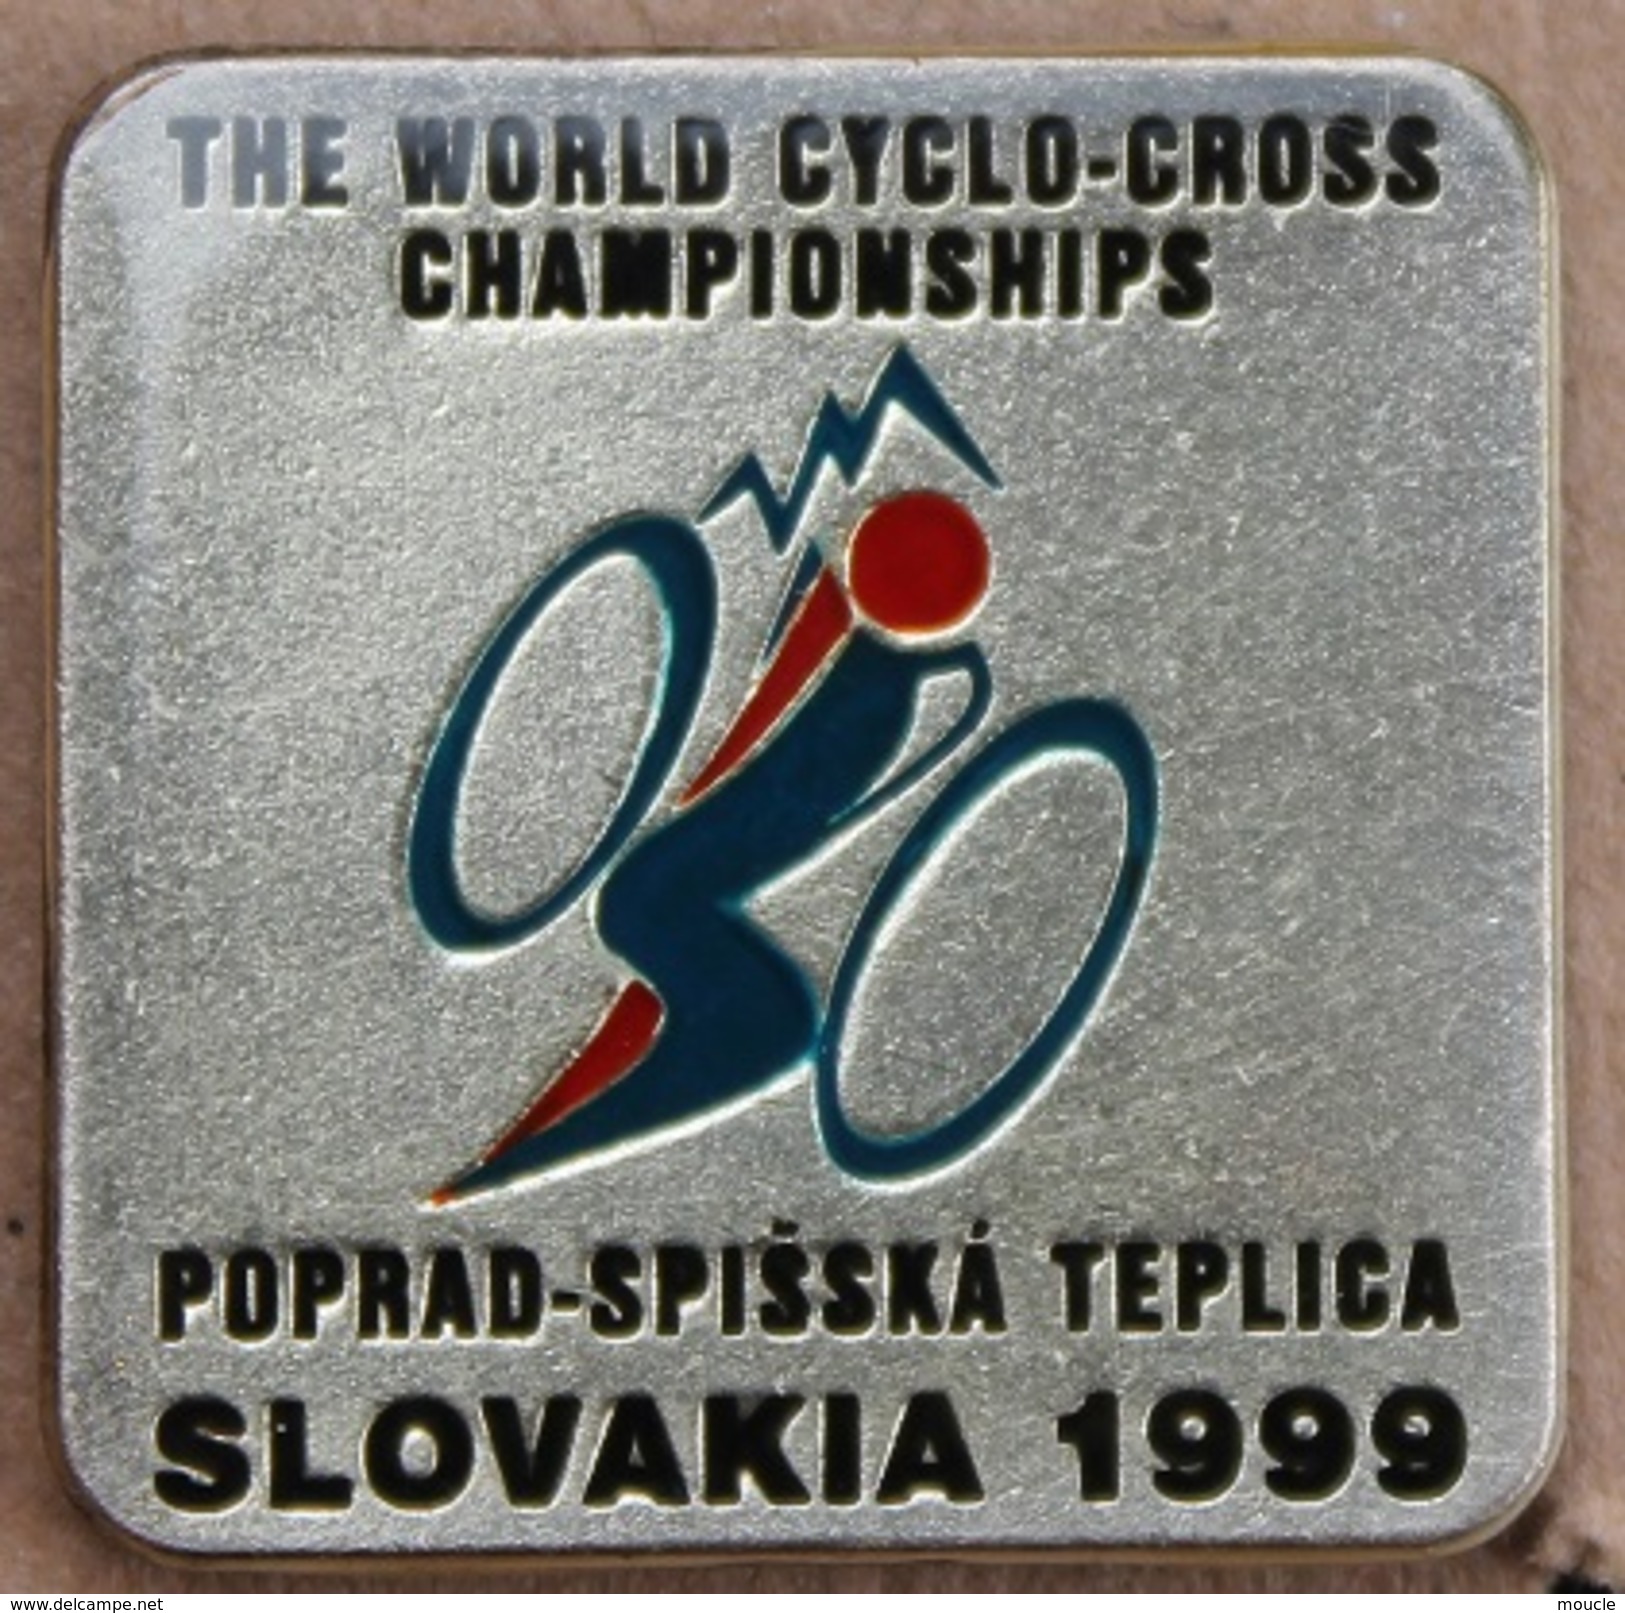 CYCLISME - VELO - CYCLISTE - THE WORLD CYCLO-CROSS CHAMPIONSHIPS POPRAD - SPISSKA TEPLICA SLOVAKIA 1999 -    (17) - Cyclisme